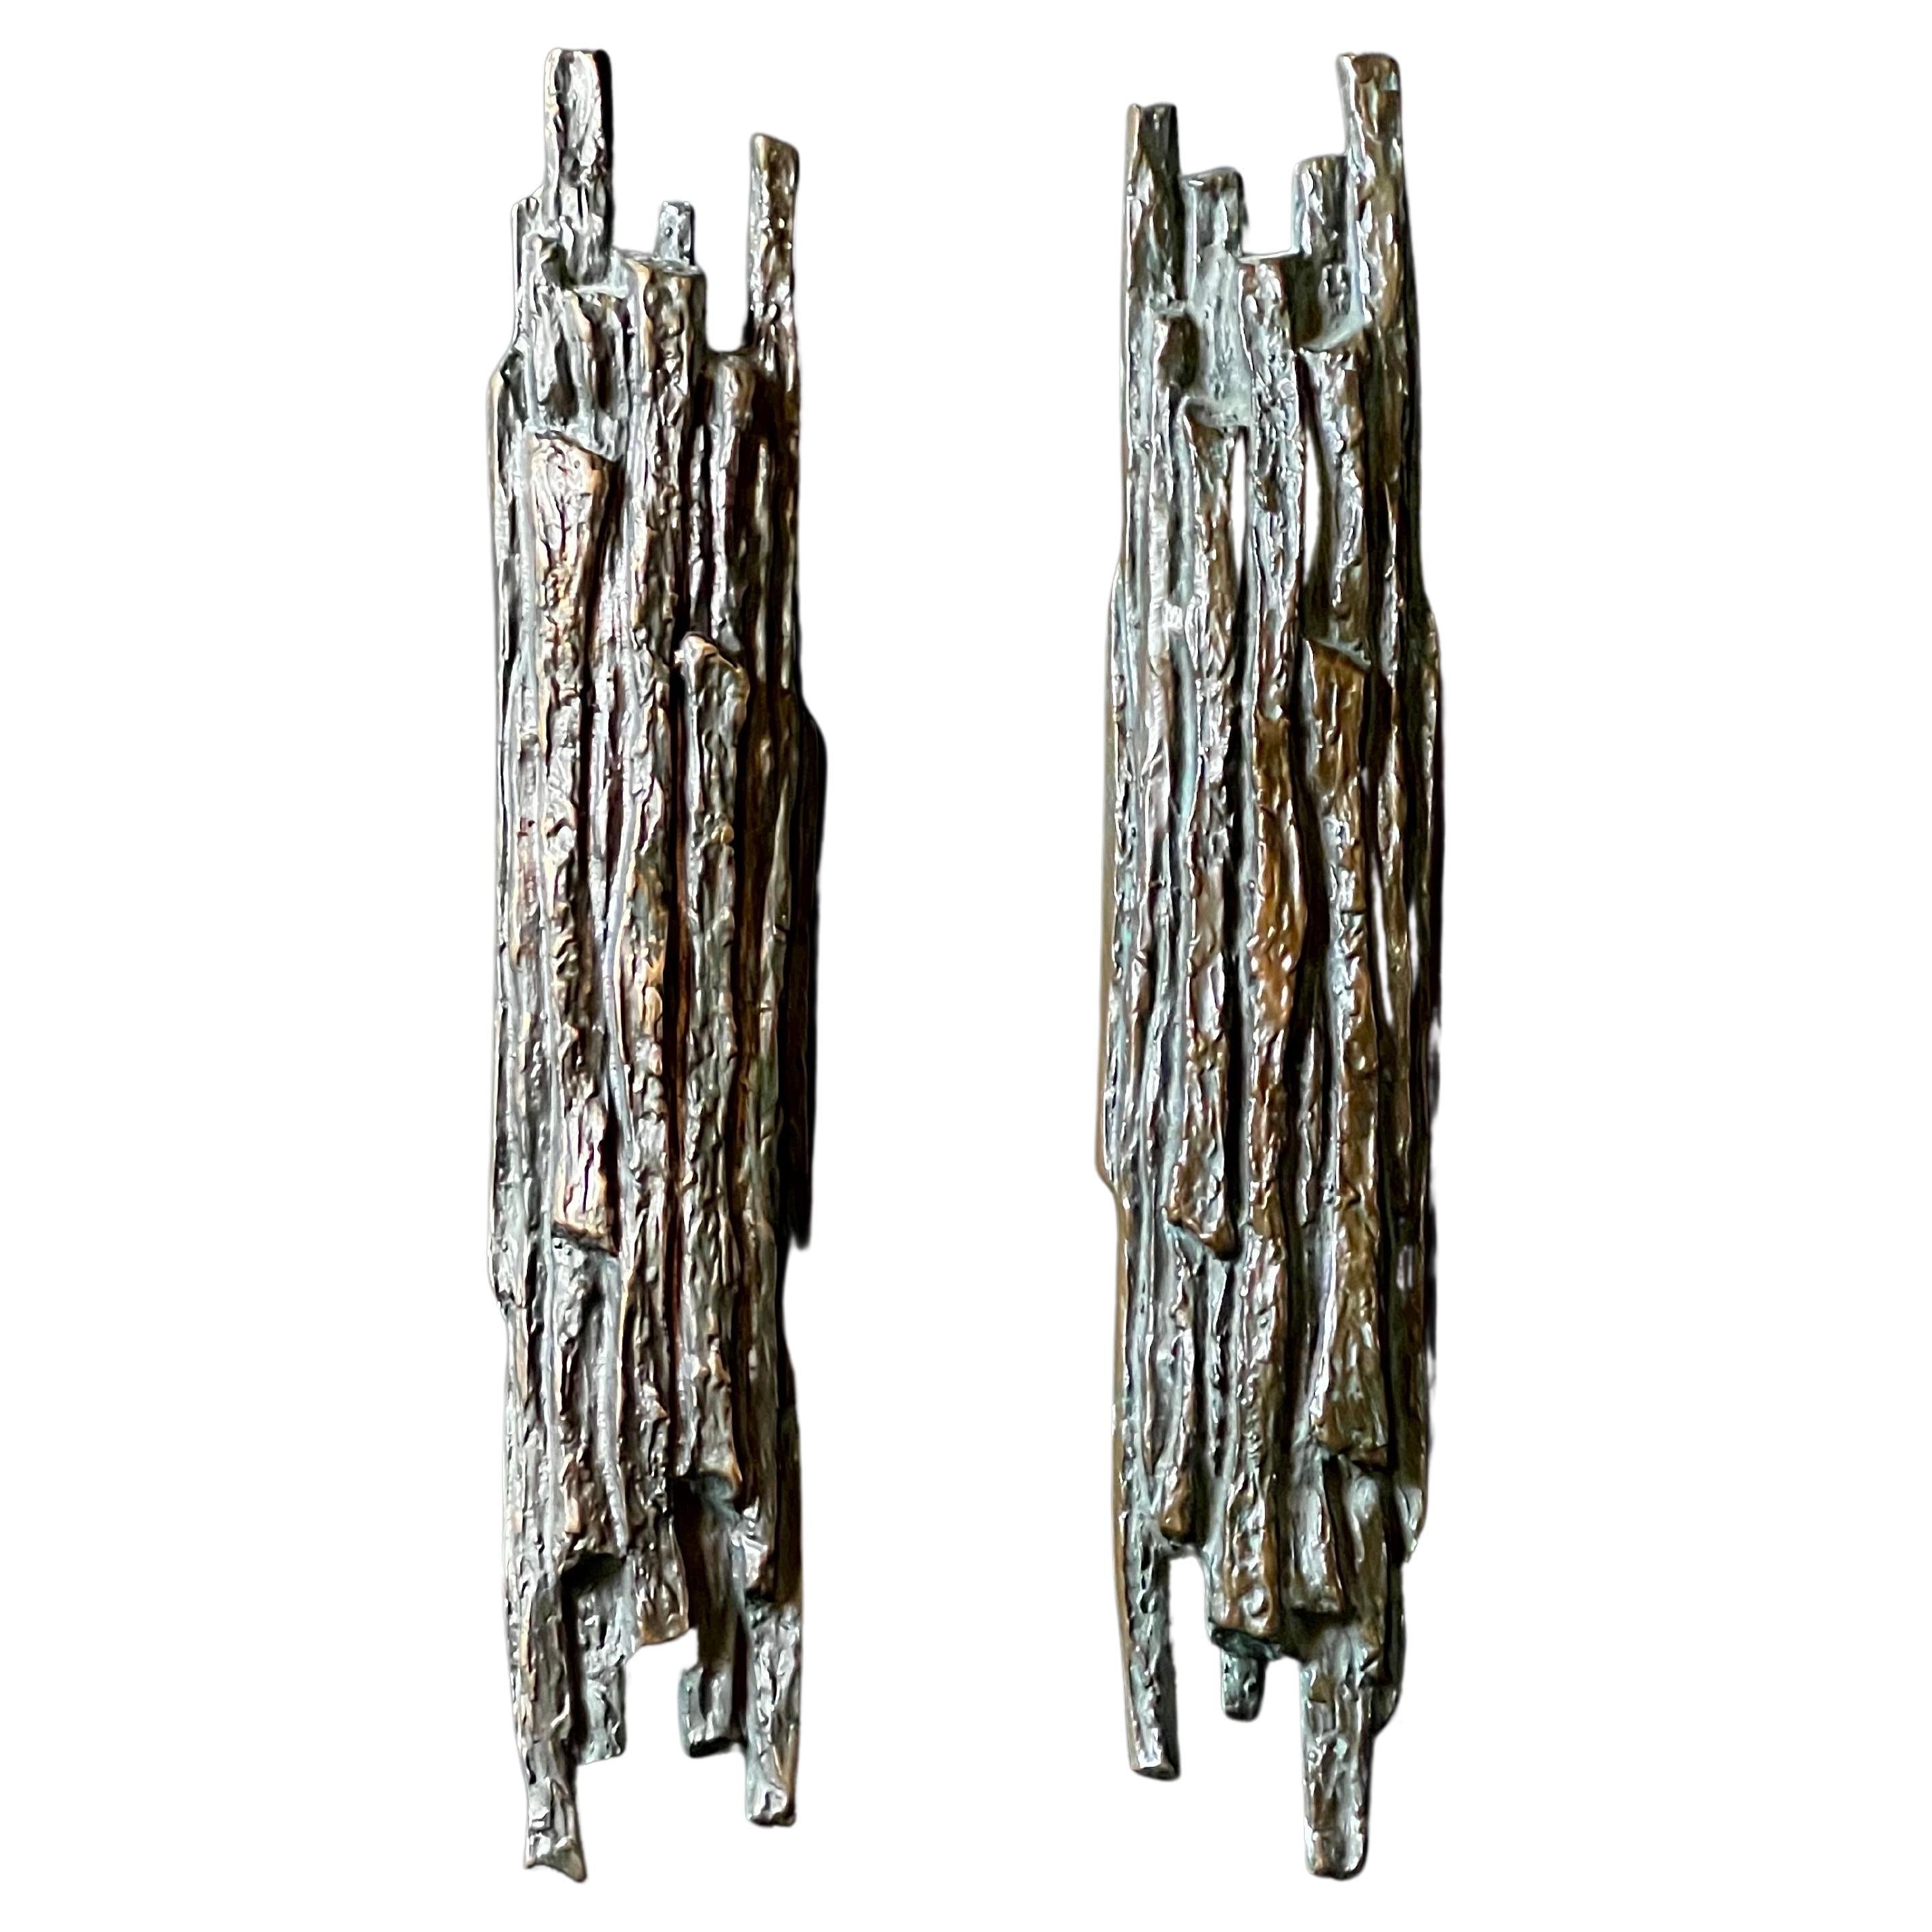 Set of Two Bronze Door Handles with Tree Bark Relief